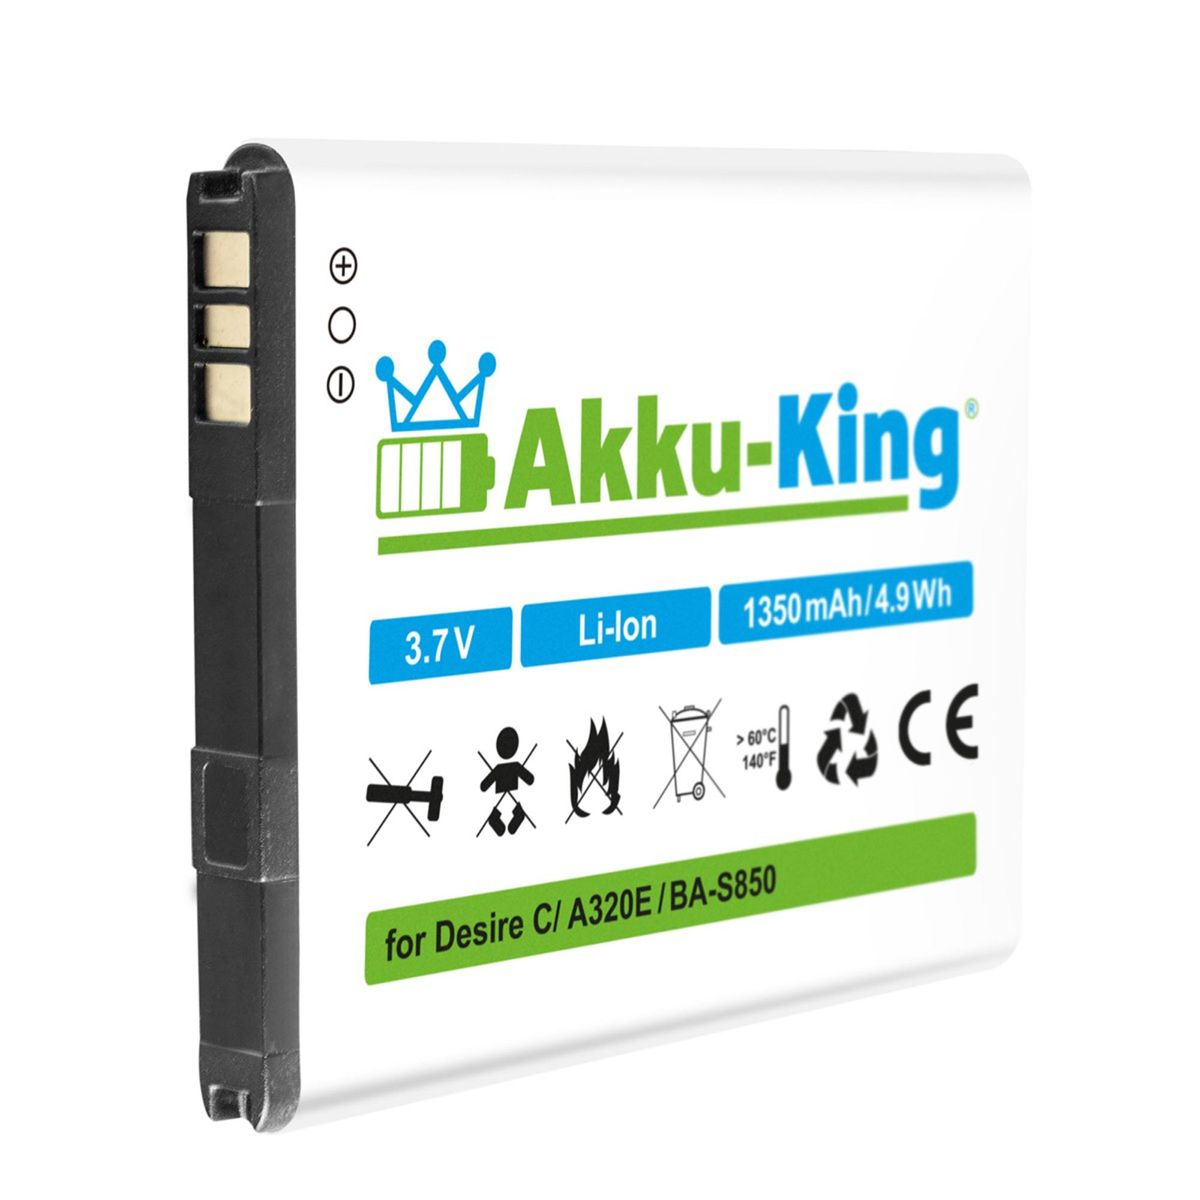 AKKU-KING BA-S850 HTC Li-Ion Akku 3.7 1350mAh mit Volt, Handy-Akku, kompatibel